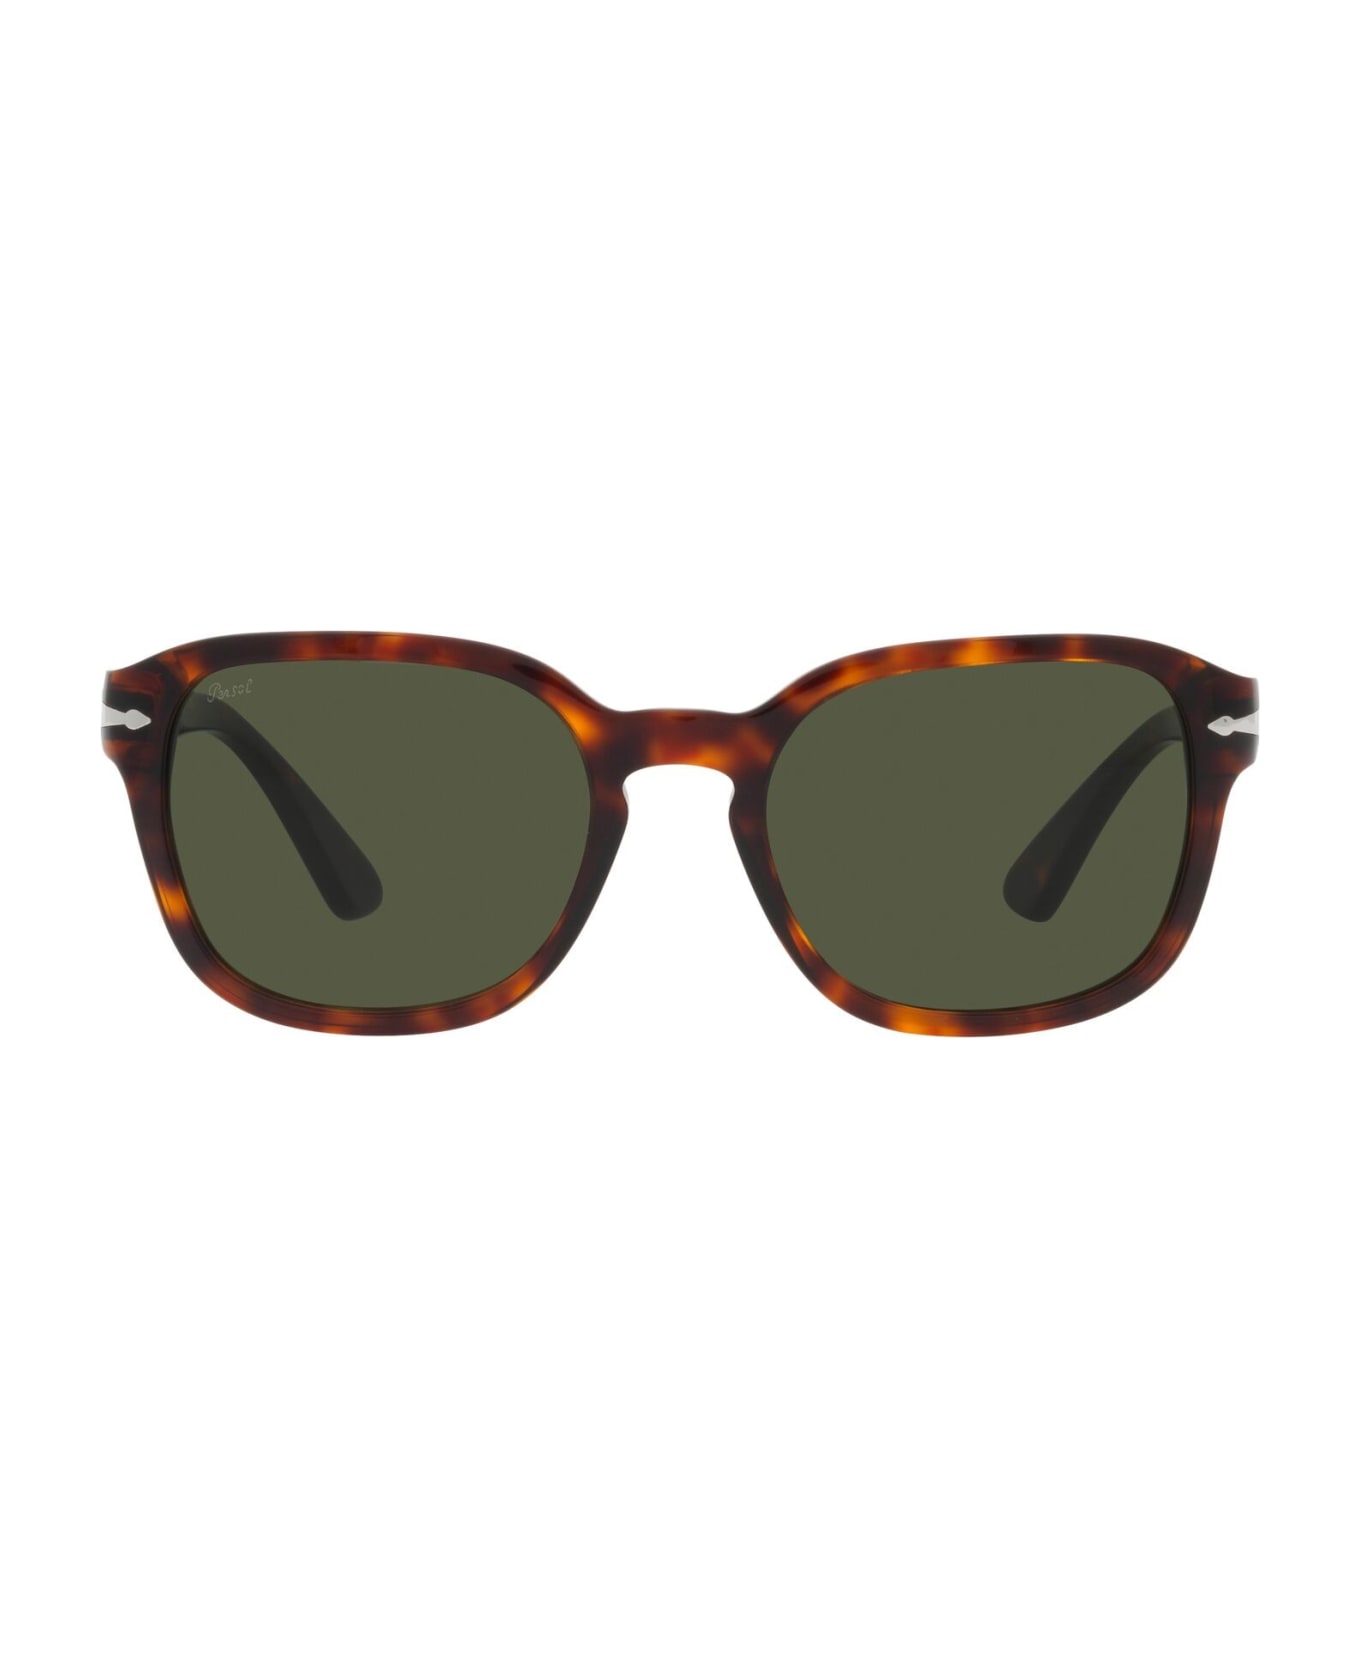 Persol Sunglasses - Marrone/Verde